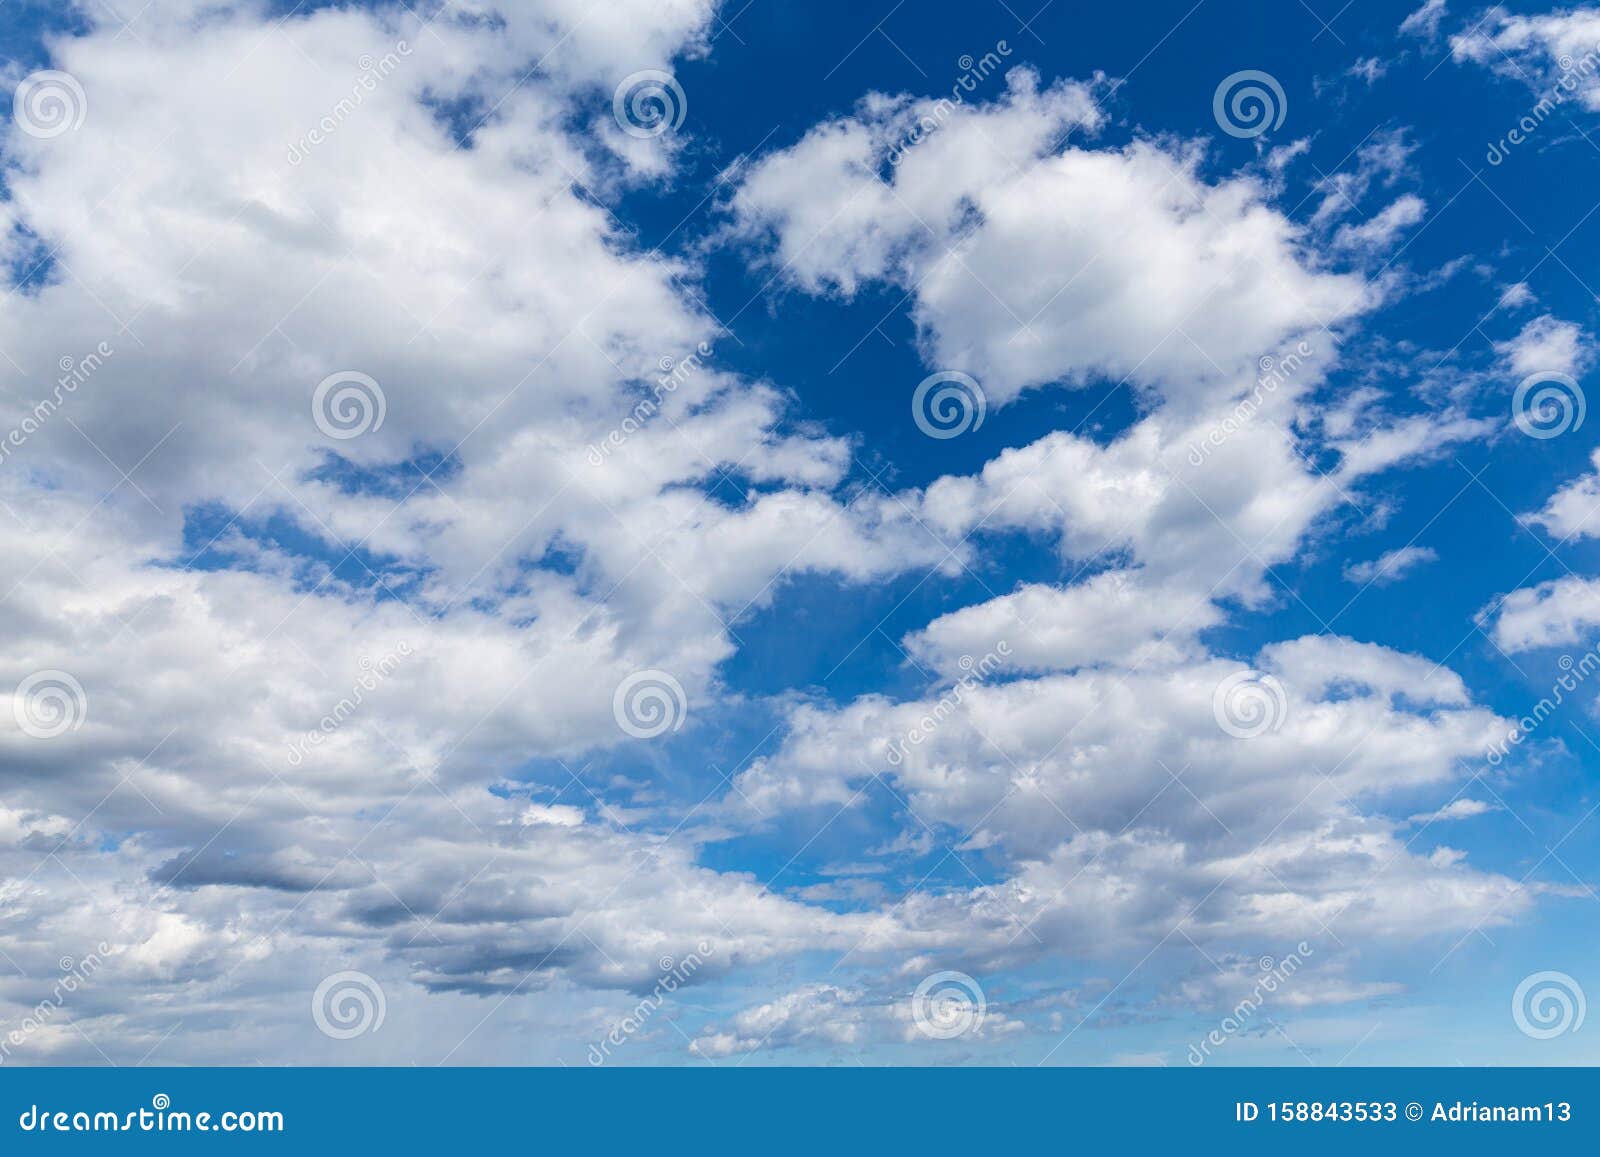 Nắm bắt khoảnh khắc trời đầy mây tuyệt đẹp với bộ sưu tập hình ảnh nền trời đầy mây của chúng tôi. Tận hưởng cảm giác thư giãn khi ngắm nhìn những đám mây êm đềm trôi trên bầu trời.